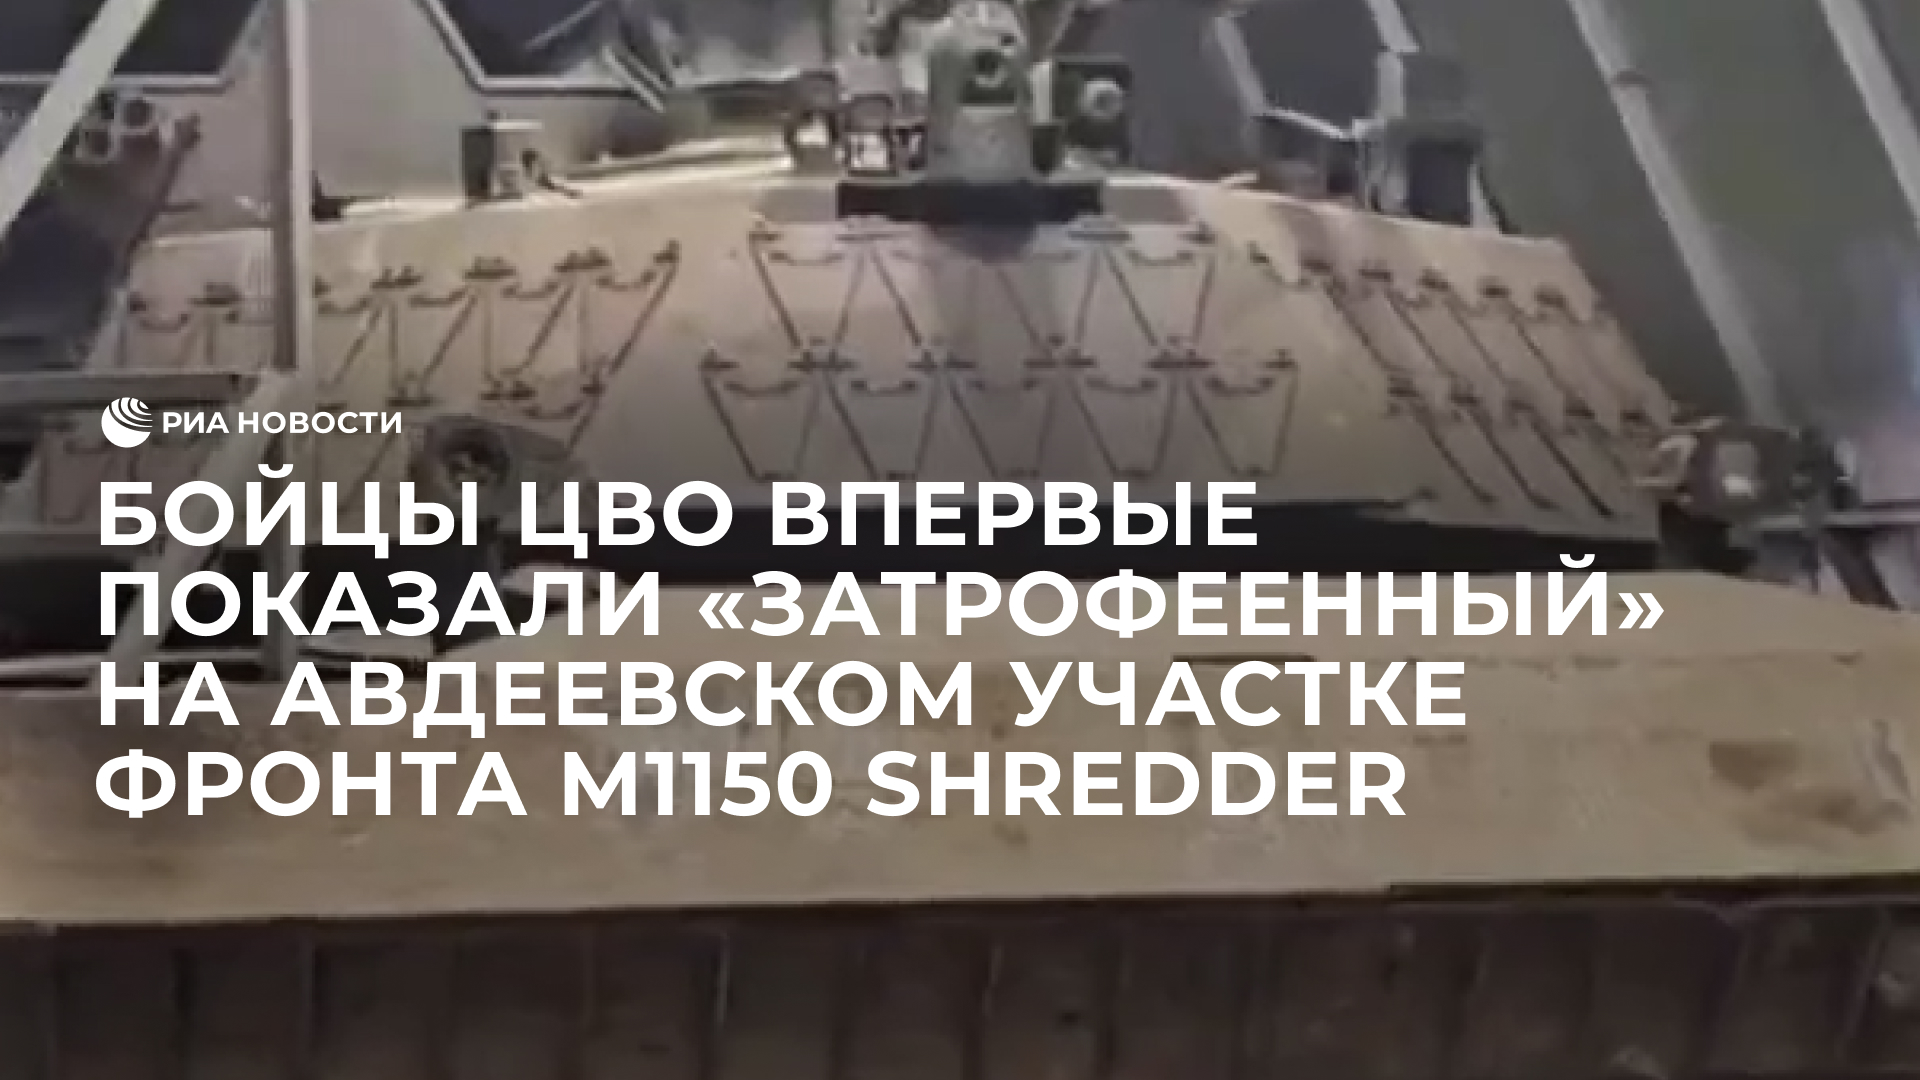 Бойцы ЦВО впервые  показали «затрофеенный» на авдеевском участке фронта M1150 Shredder